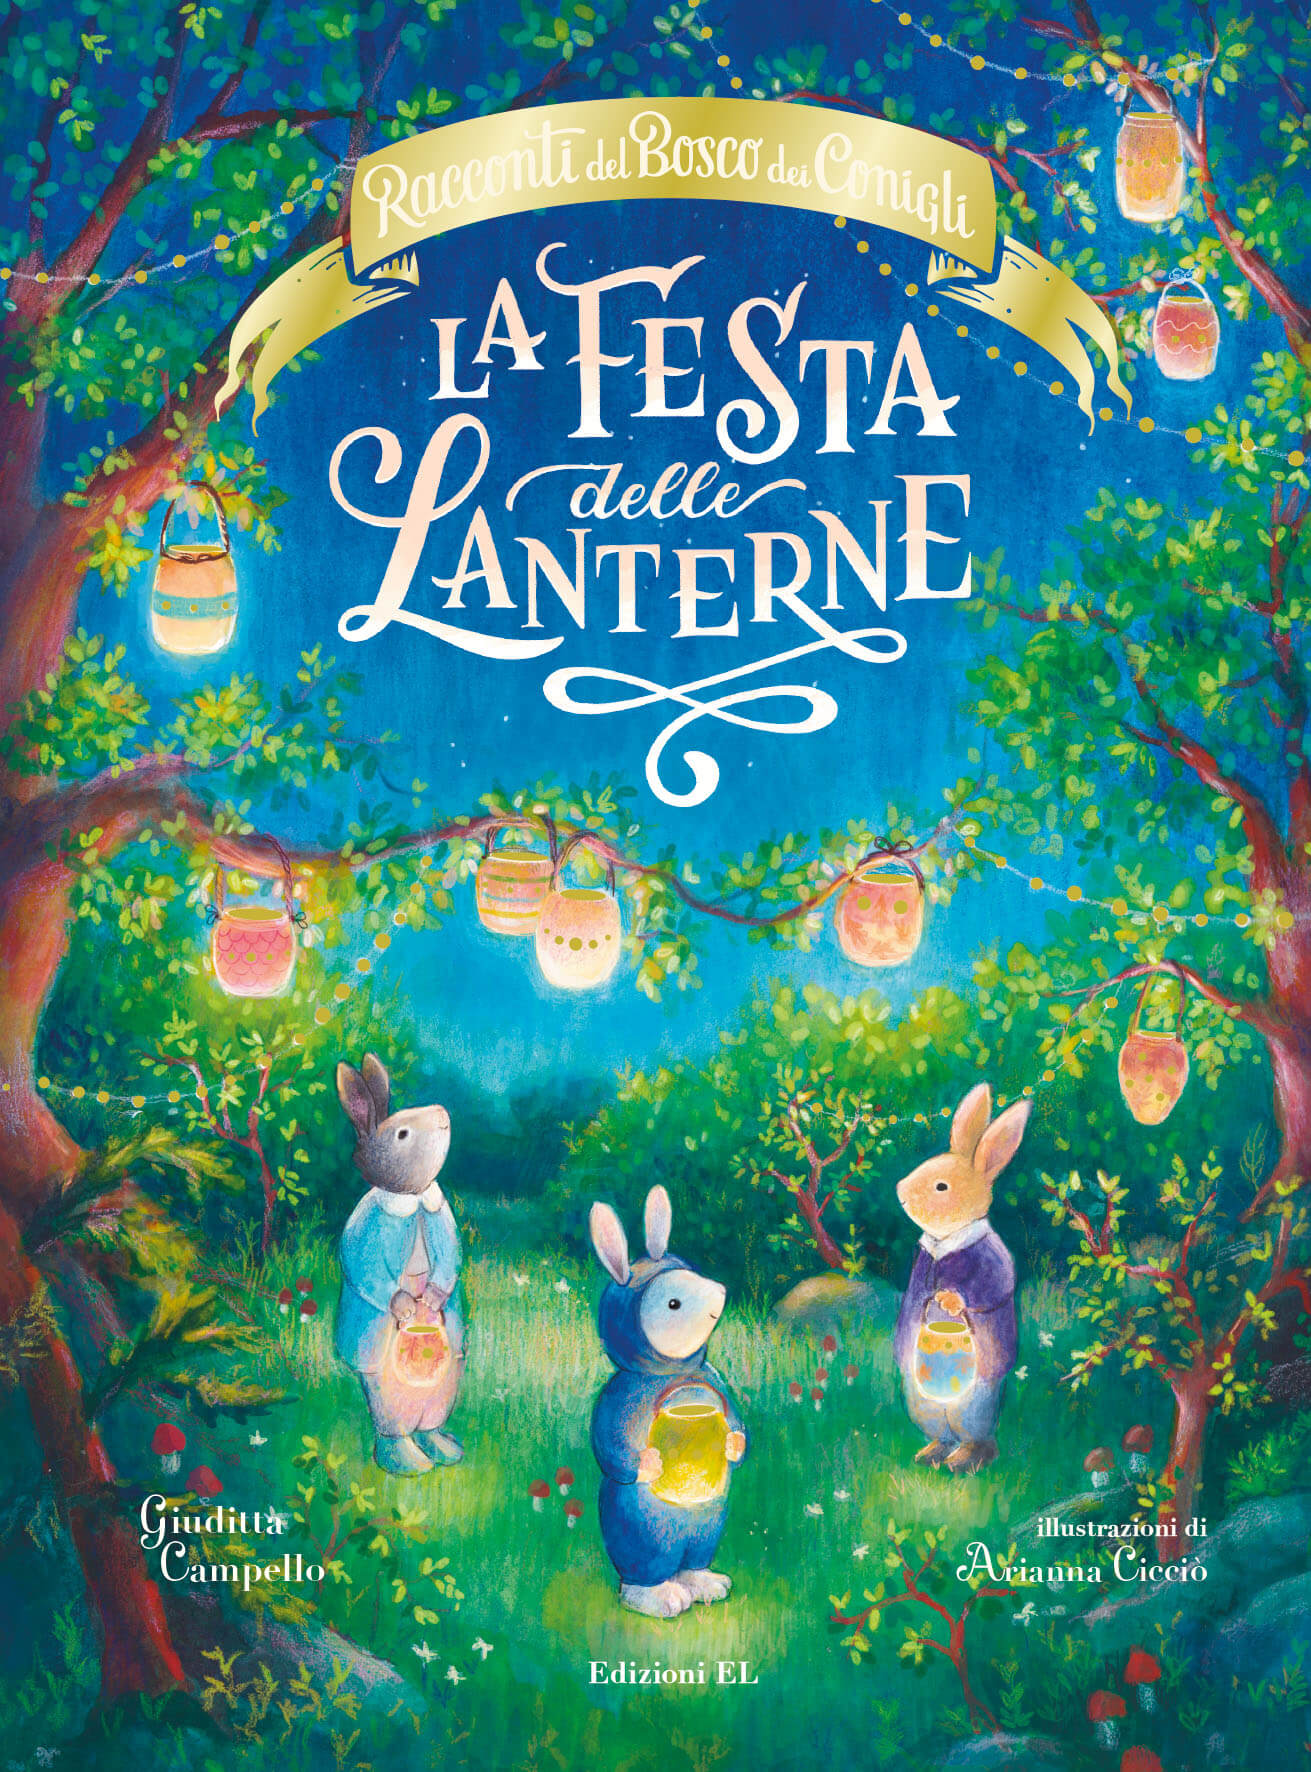 Racconti del bosco dei conigli – La festa delle lanterne